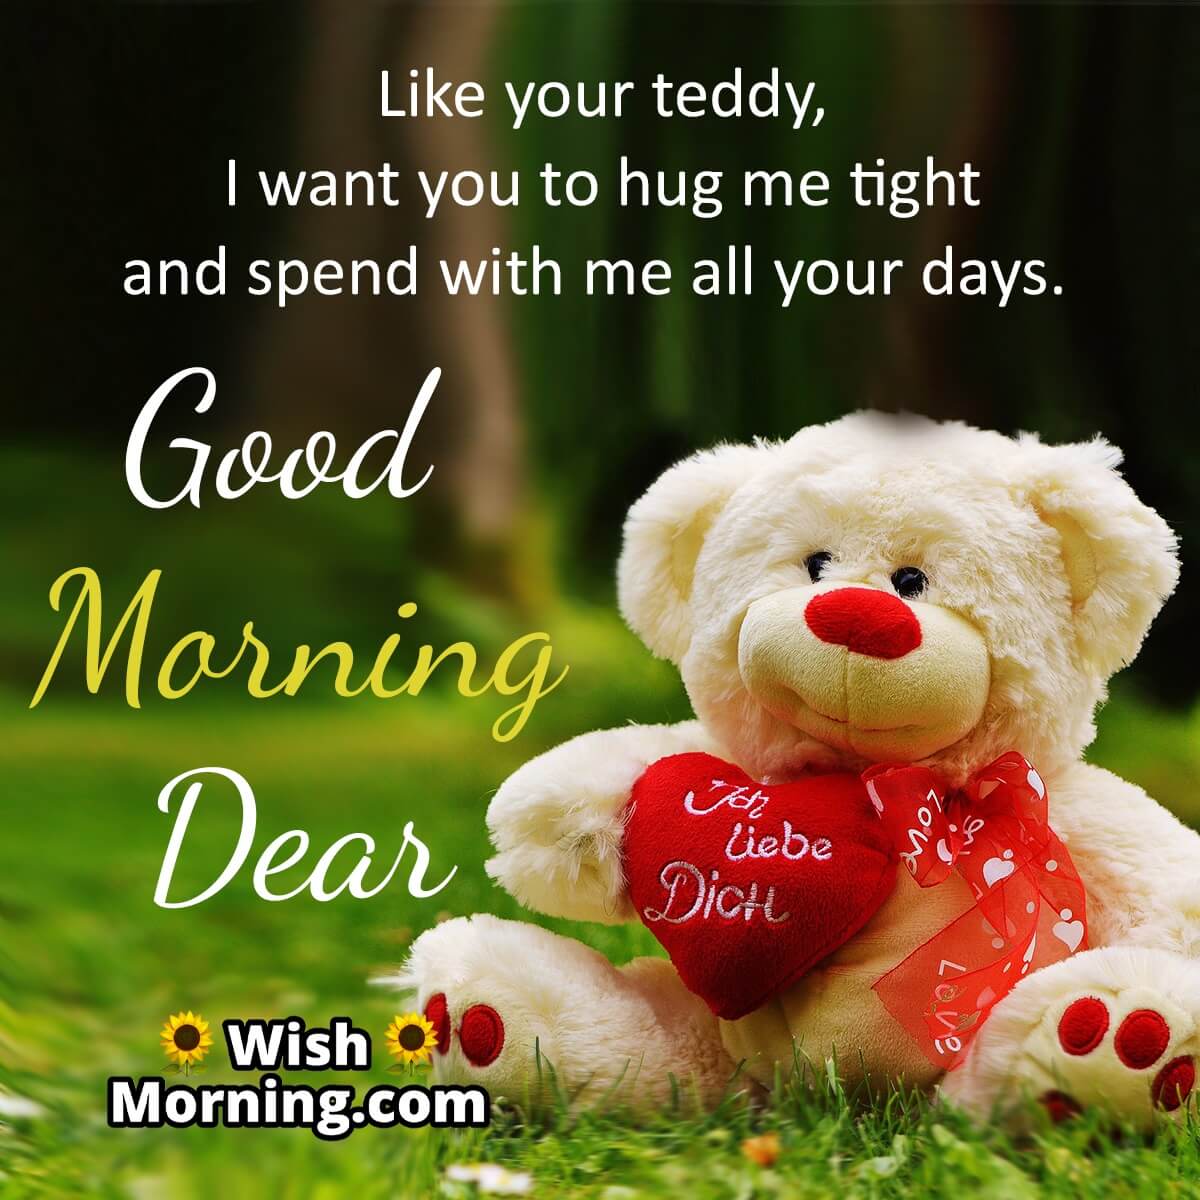 Good Morning Teddy Cards - Wish Morning